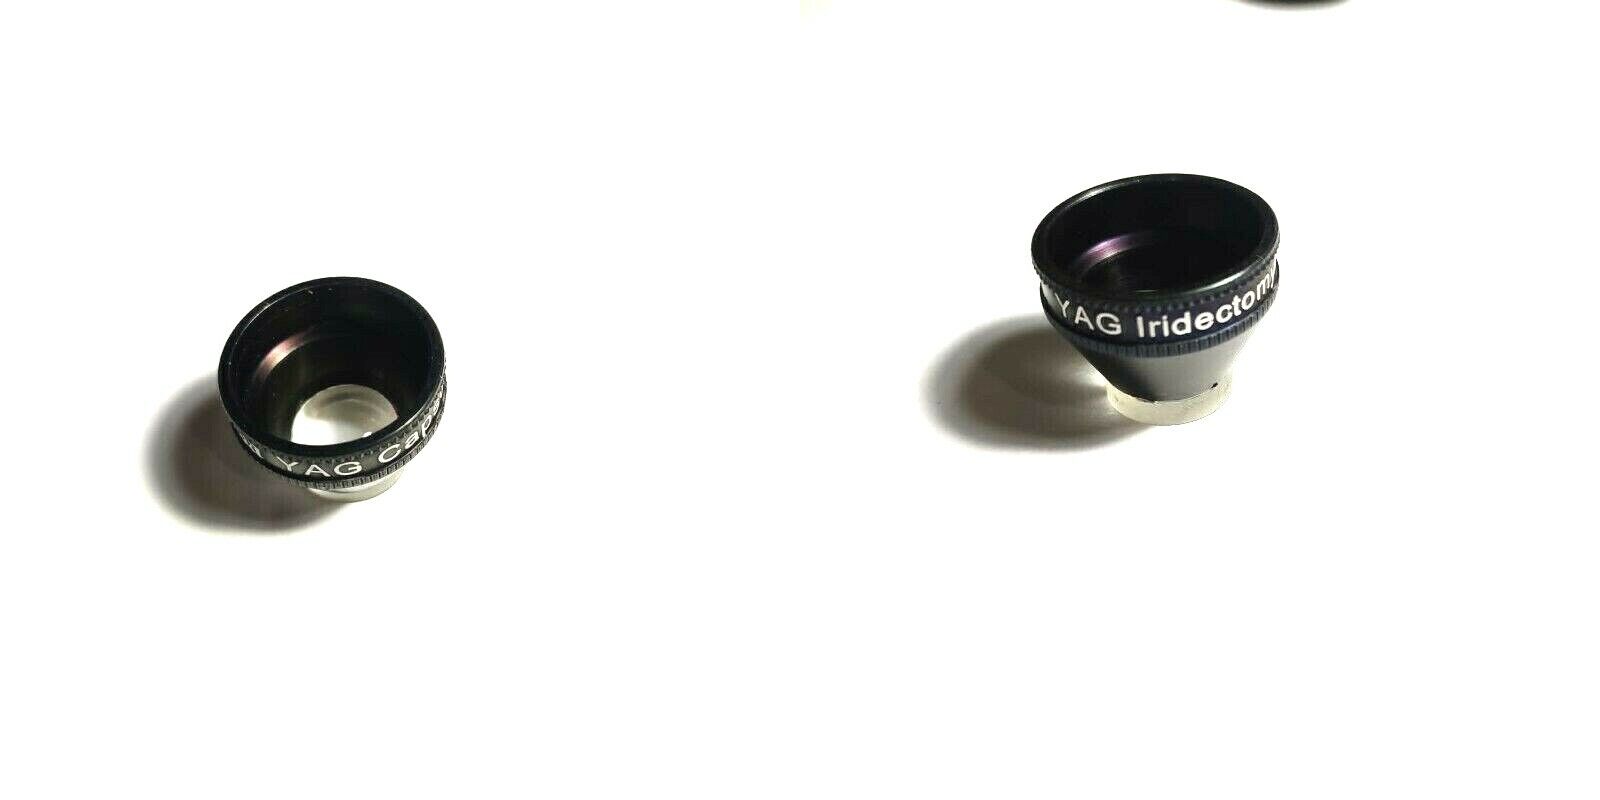 Combo Set of YAG Iridectomy And YAG Capsulotomy Lens For Eyes Hospital